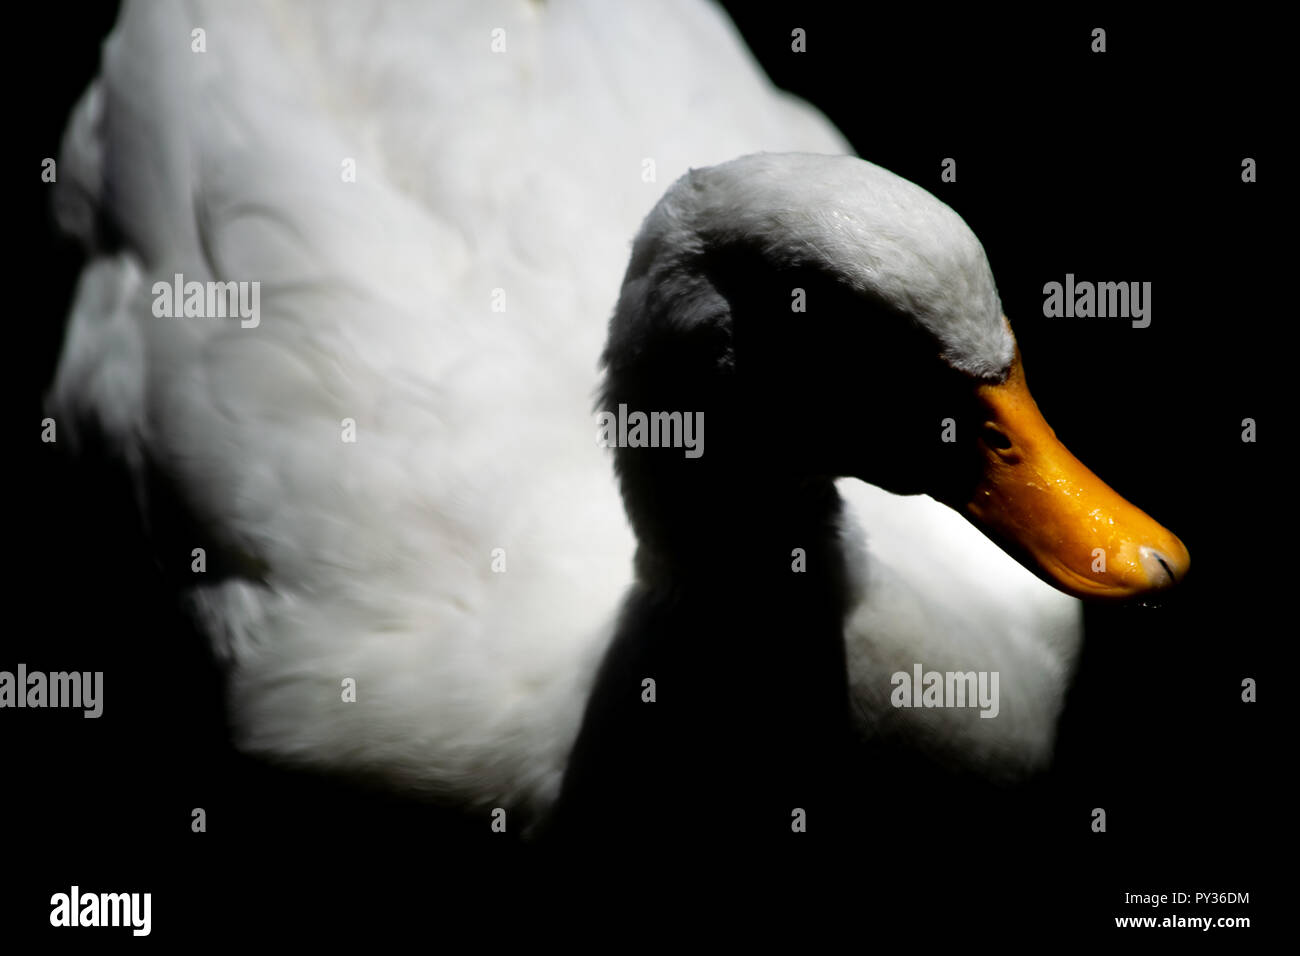 Un beau portrait d'un canard caché dans l'ombre profonde Banque D'Images